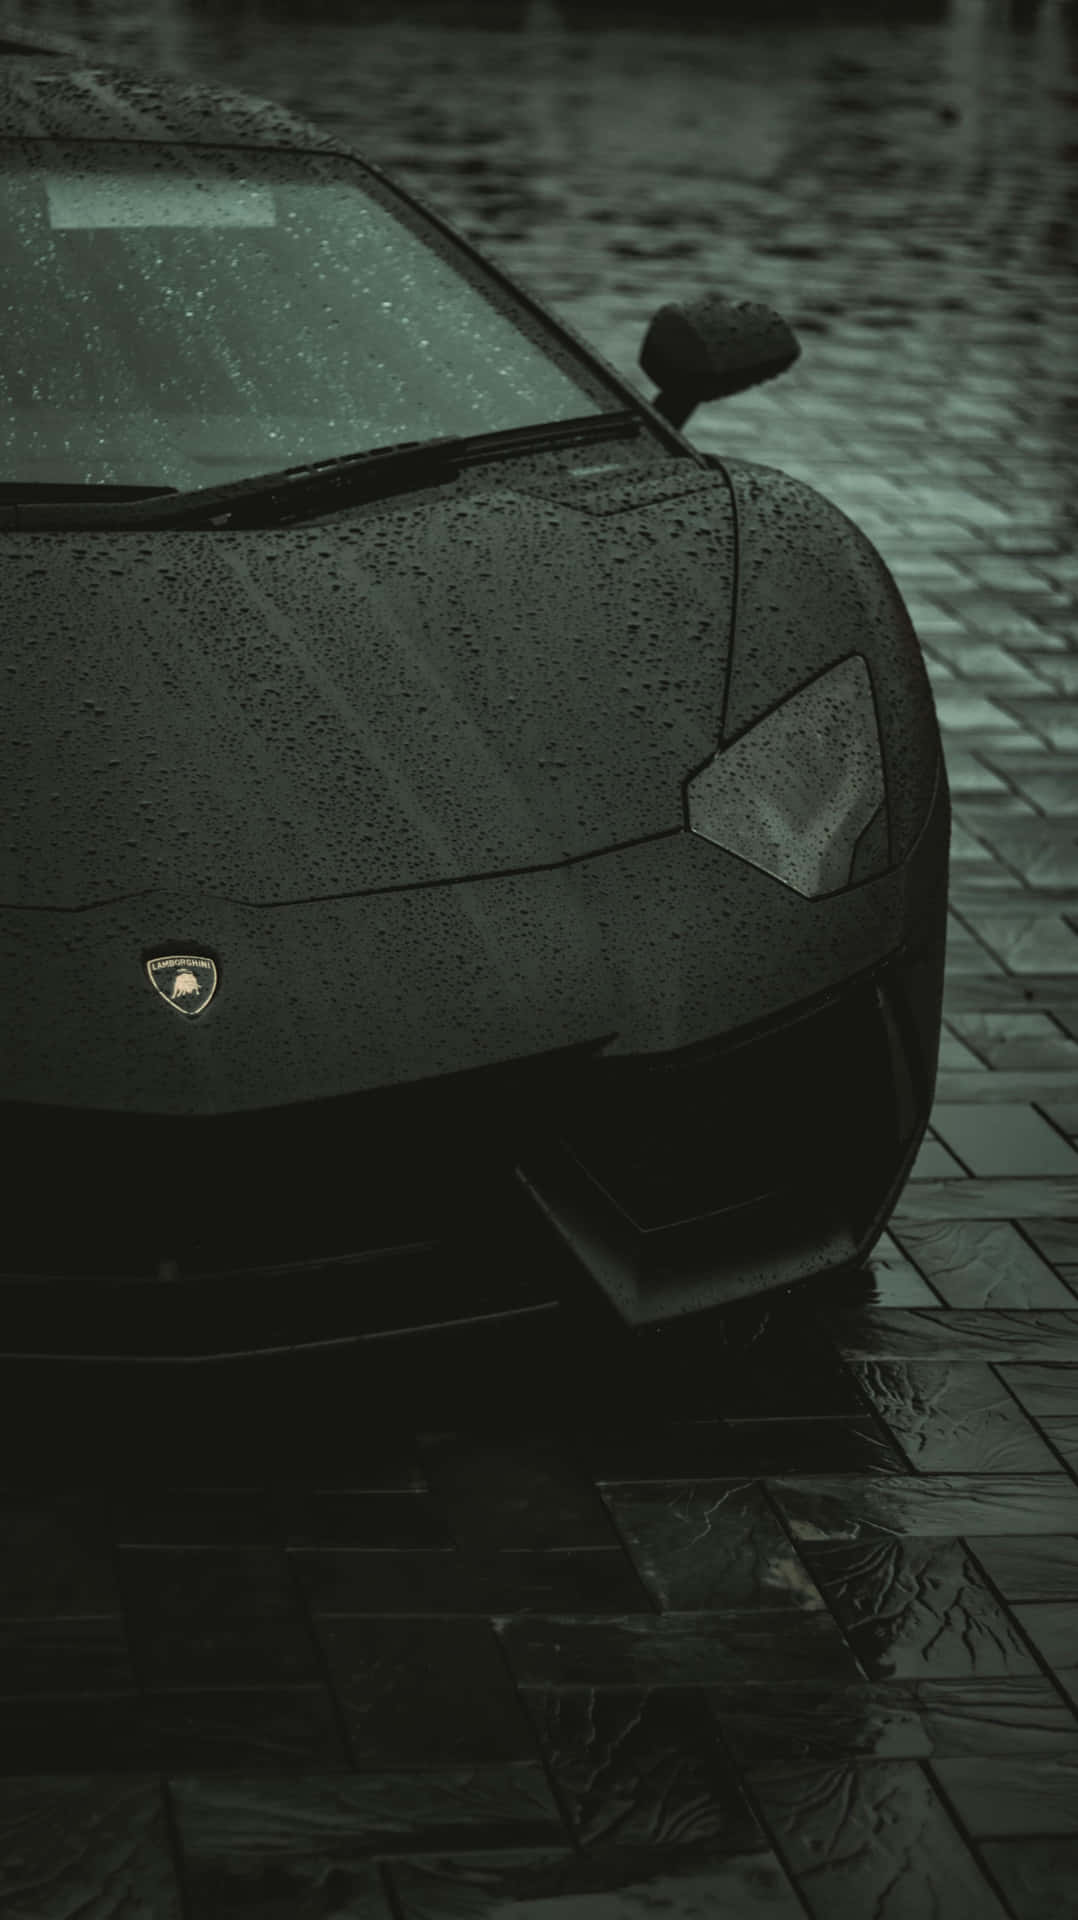 Sleek Black Sports Car Rainy Day Wallpaper